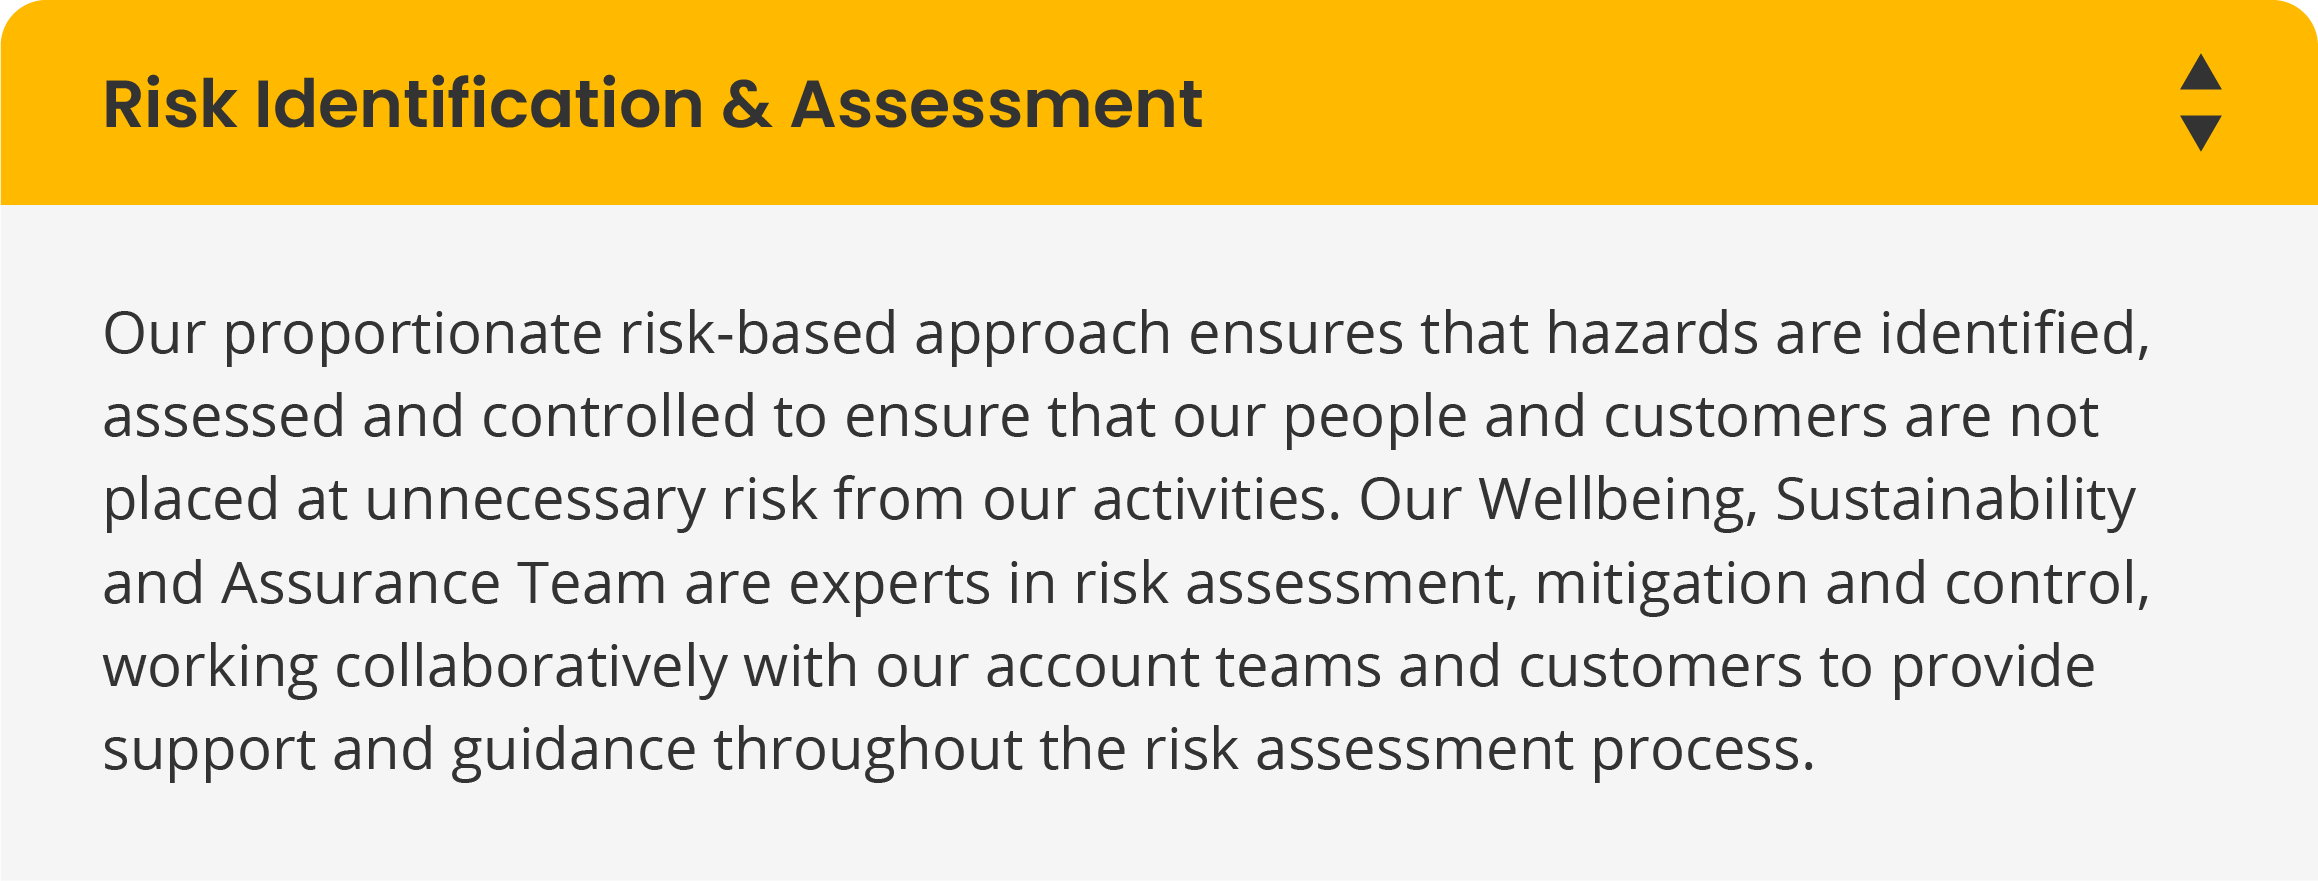 Risk Identification & Assessment